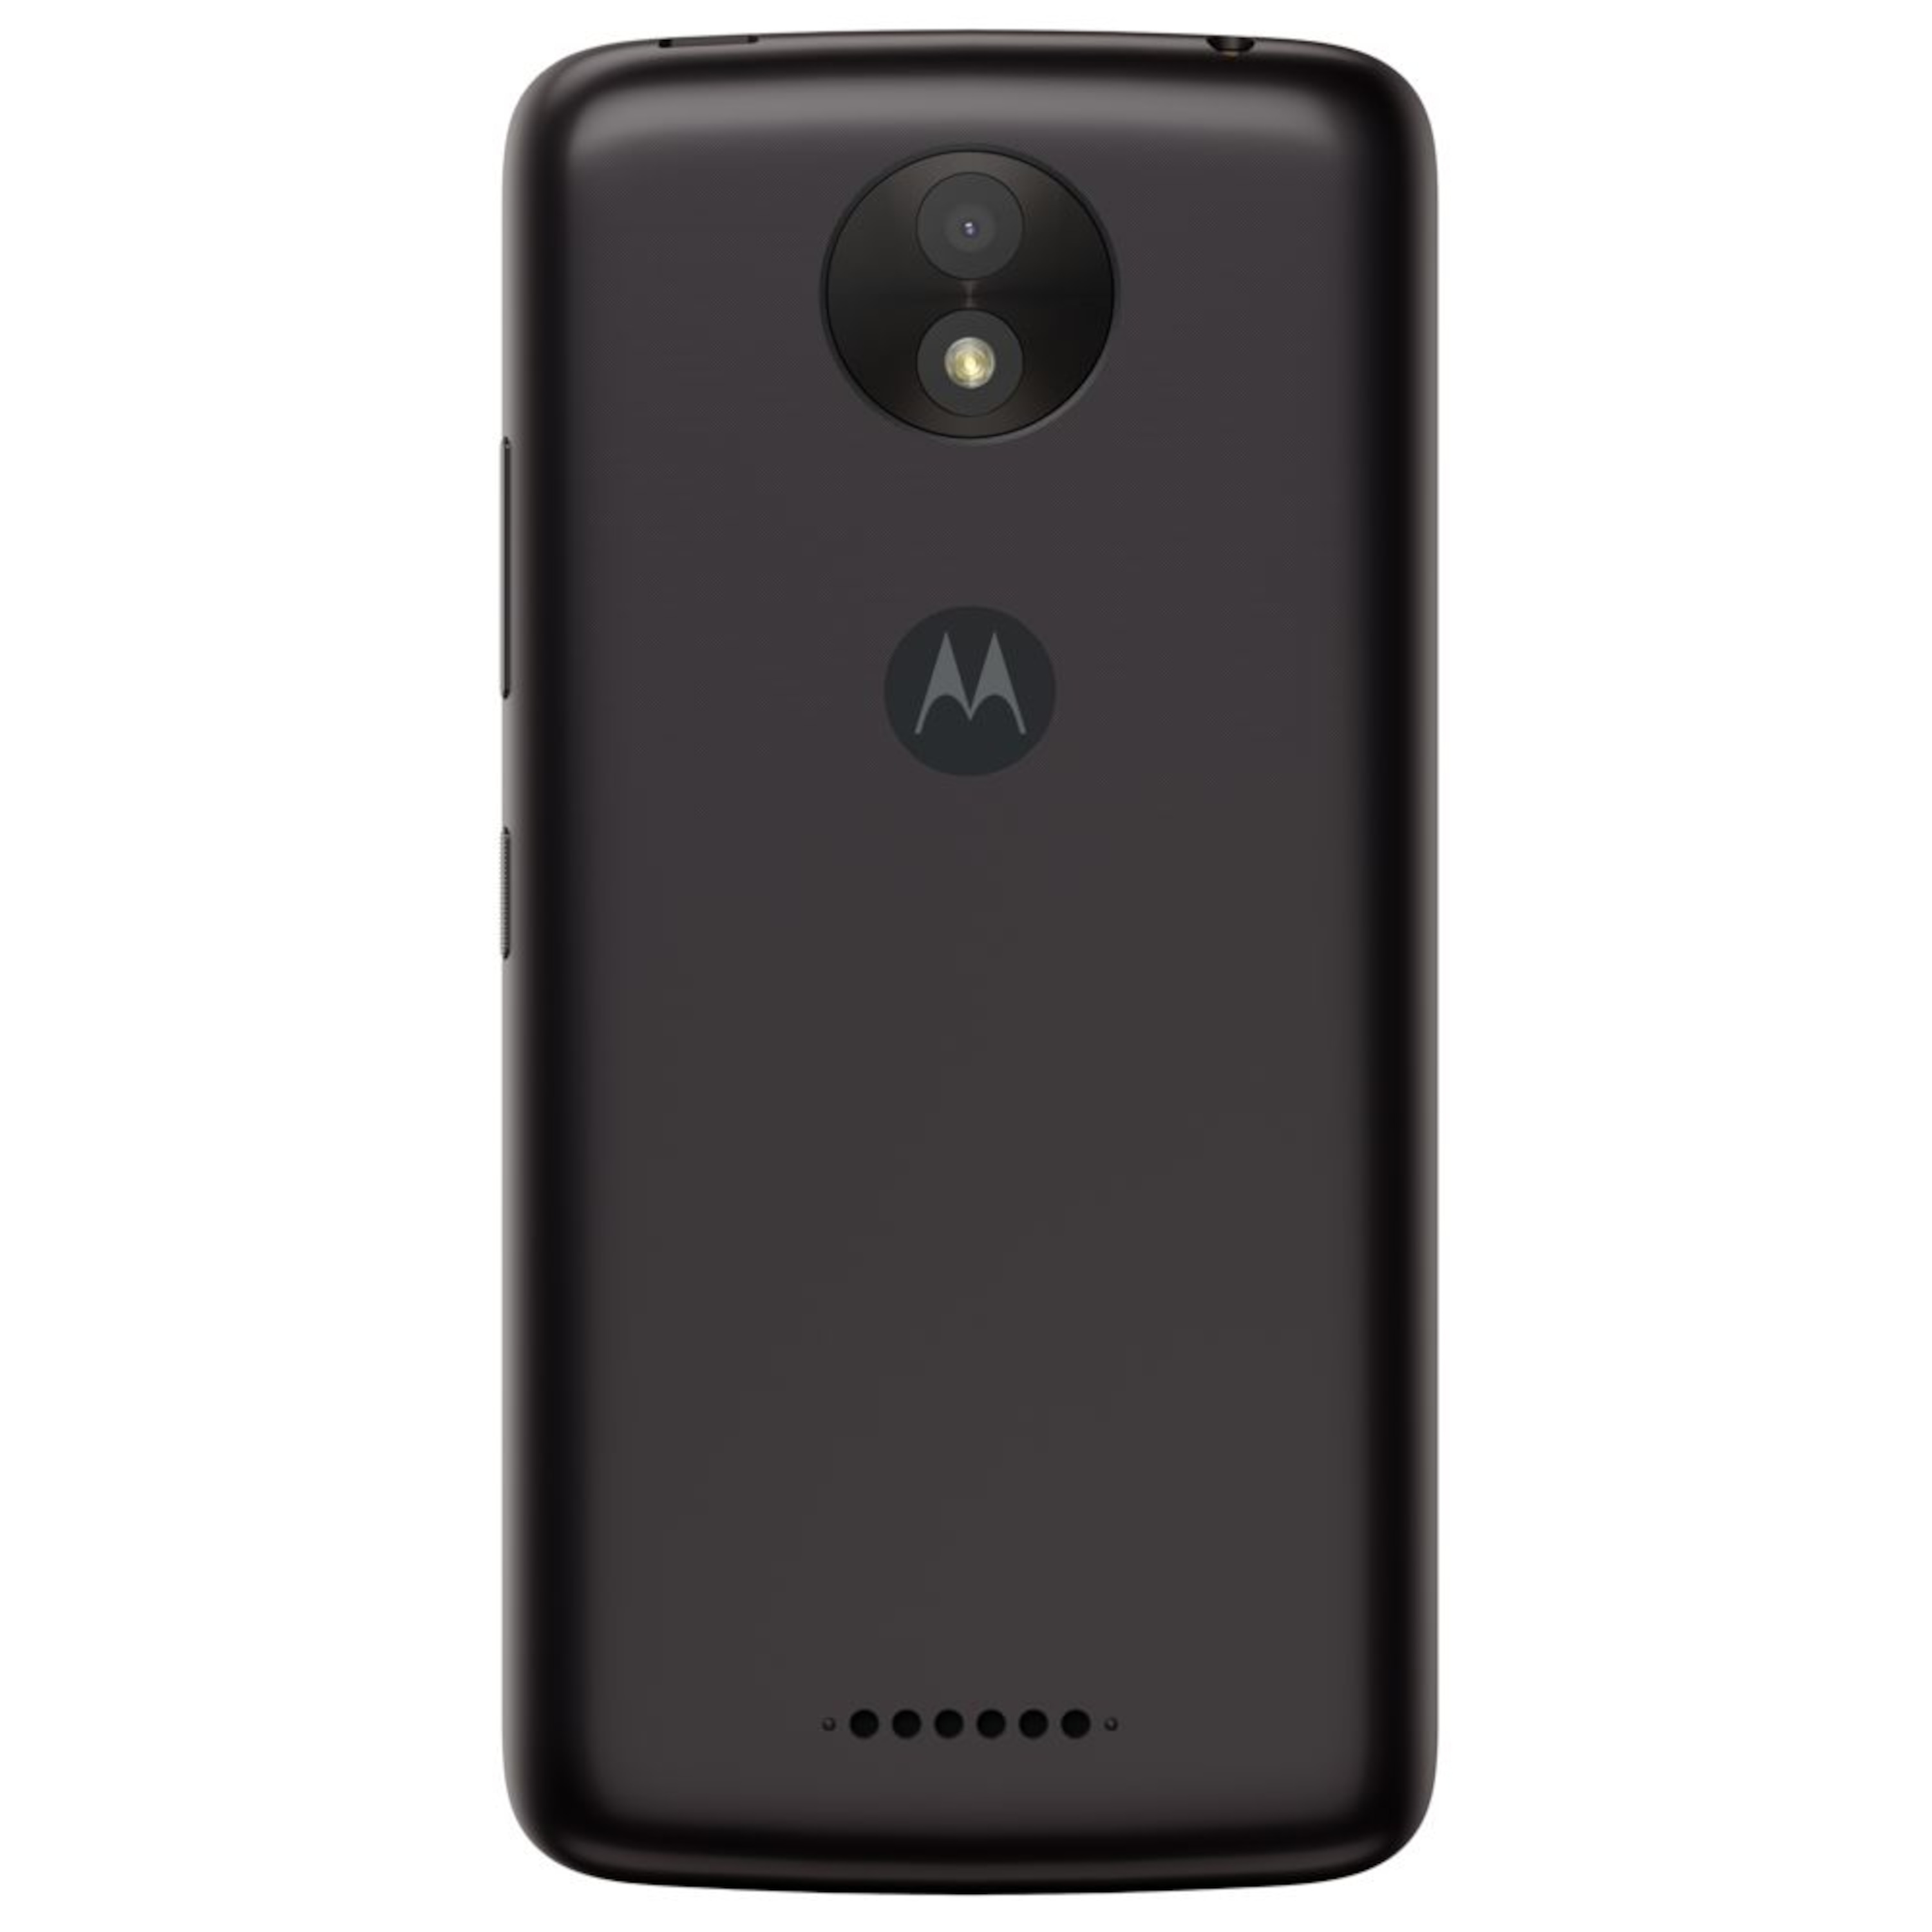 MOTOROLA Moto C Plus Smartphone, 12,7 cm (5") HD Display, Android™ 7.0, 16 GB Speicher, Quad-Core-Prozessor, Dual-SIM, LTE